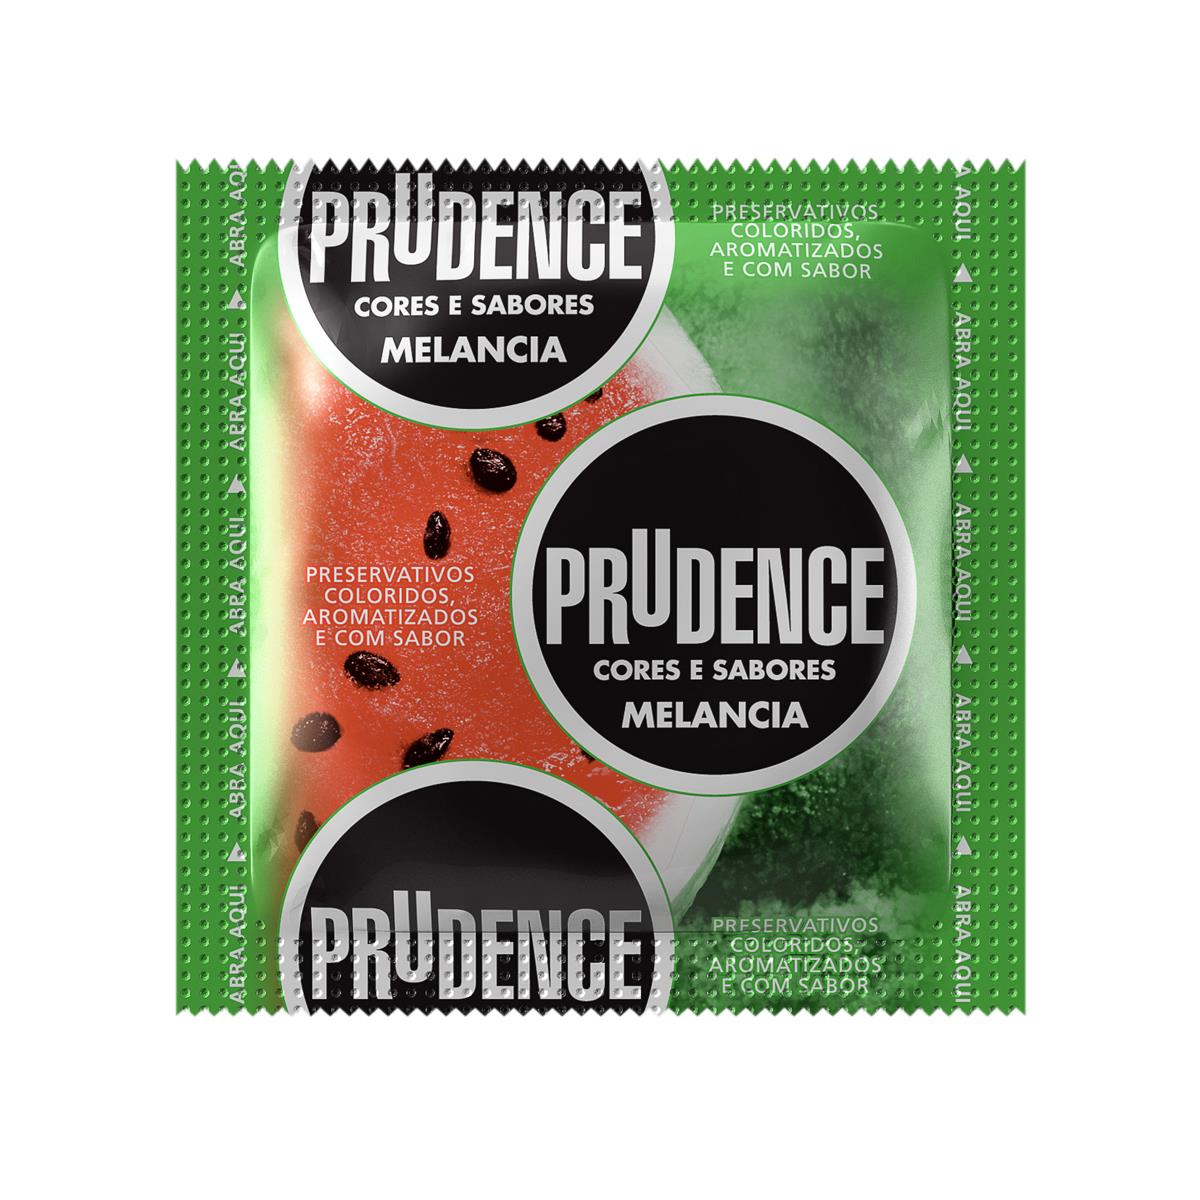 Preservativos Cores e Sabores Melancia Prudence